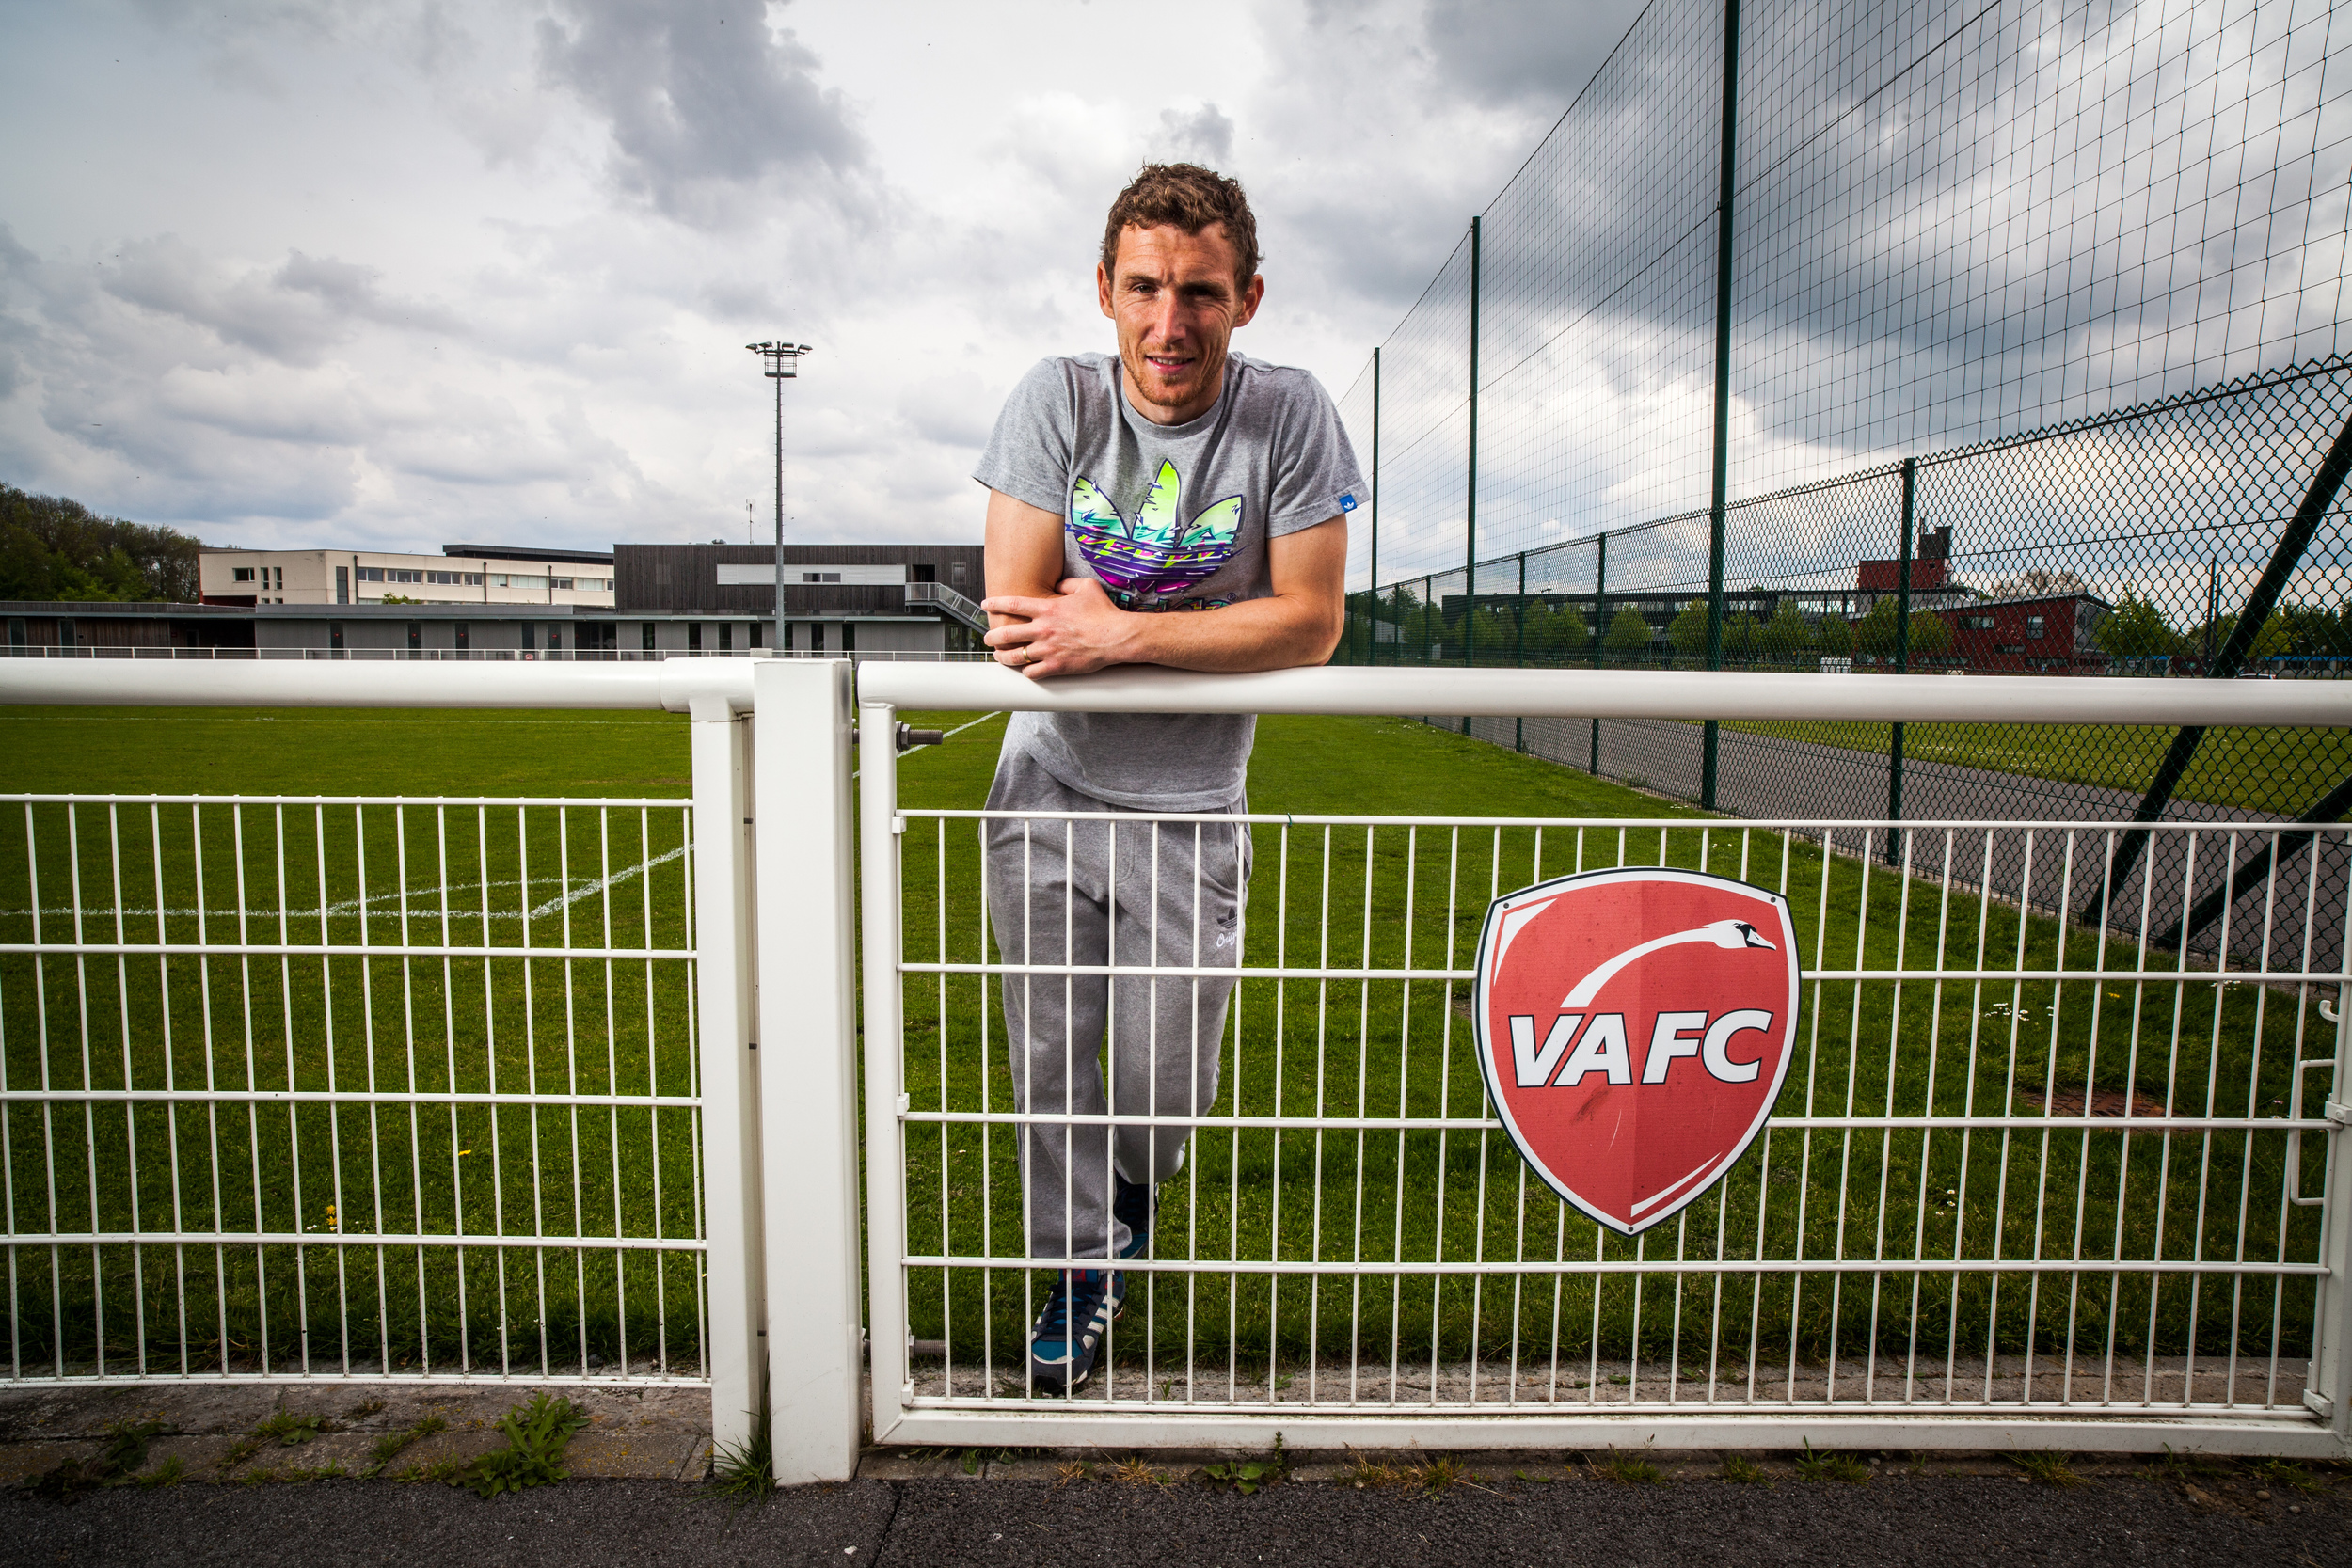  David Ducourtioux,&nbsp;joueur de football&nbsp;professionnel, ancien arrière latéral droit&nbsp;au VAFC (Valenciennes) 